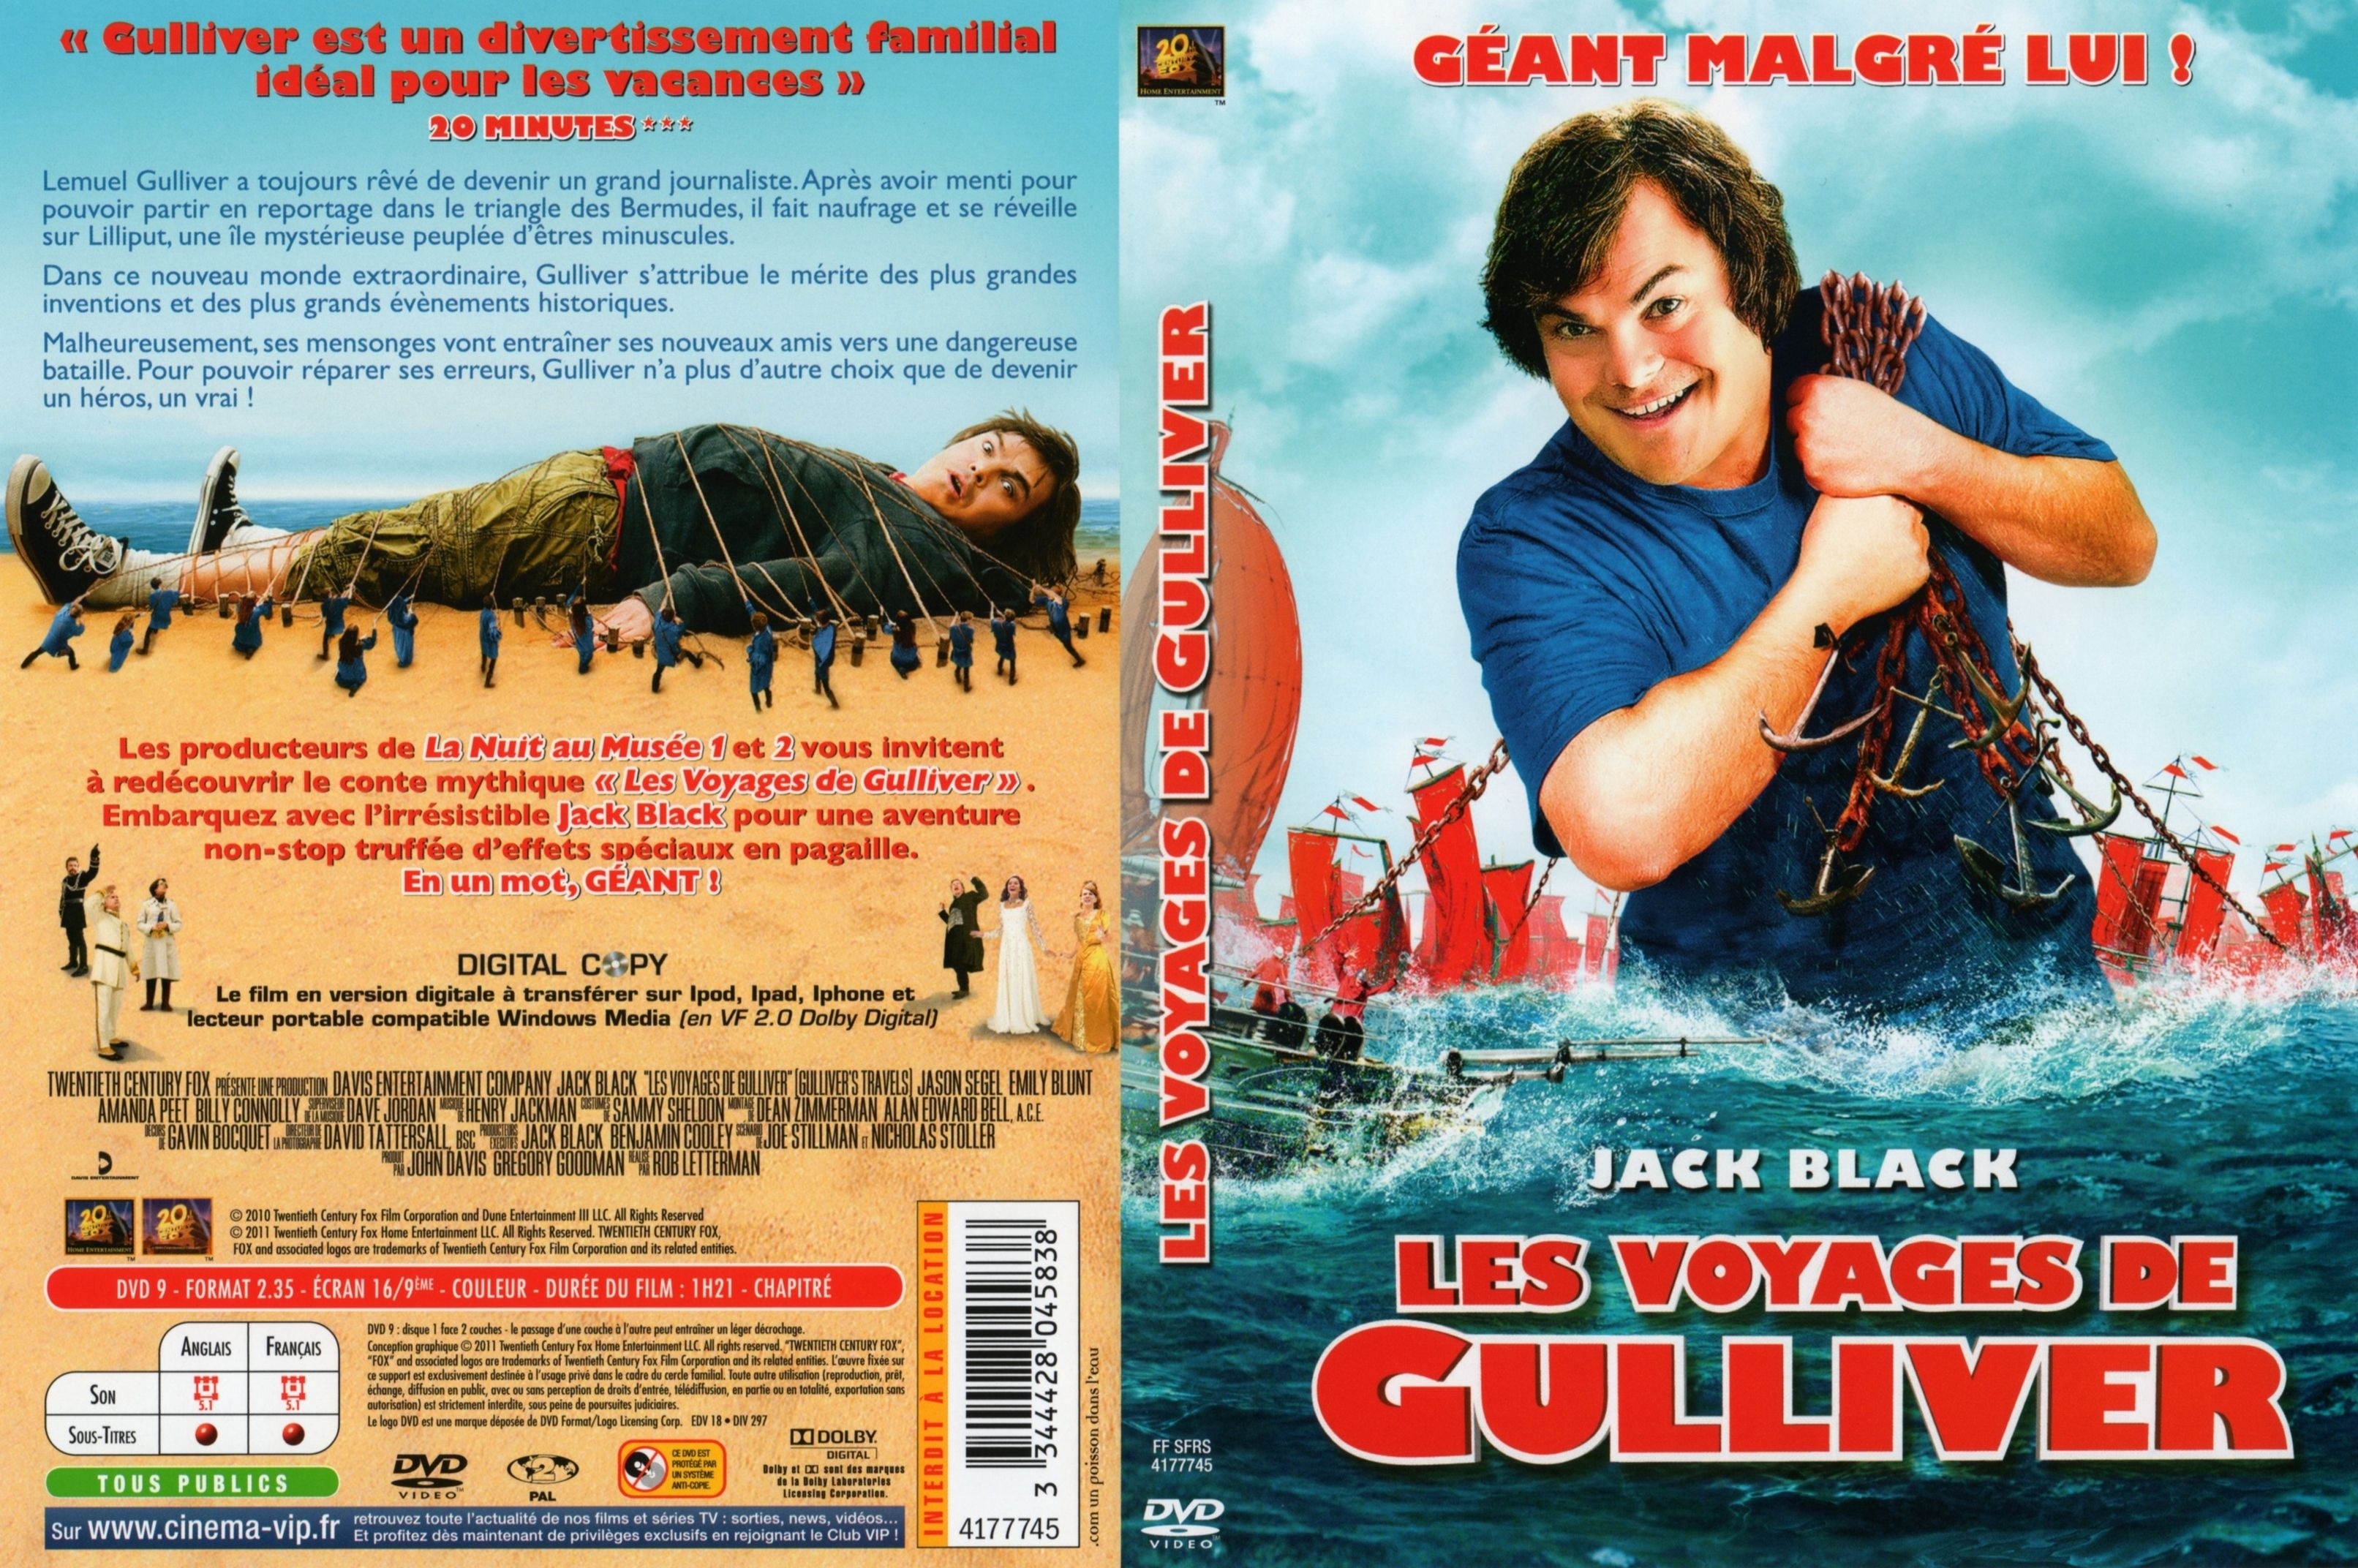 Jaquette DVD Les voyages de Gulliver (2010)